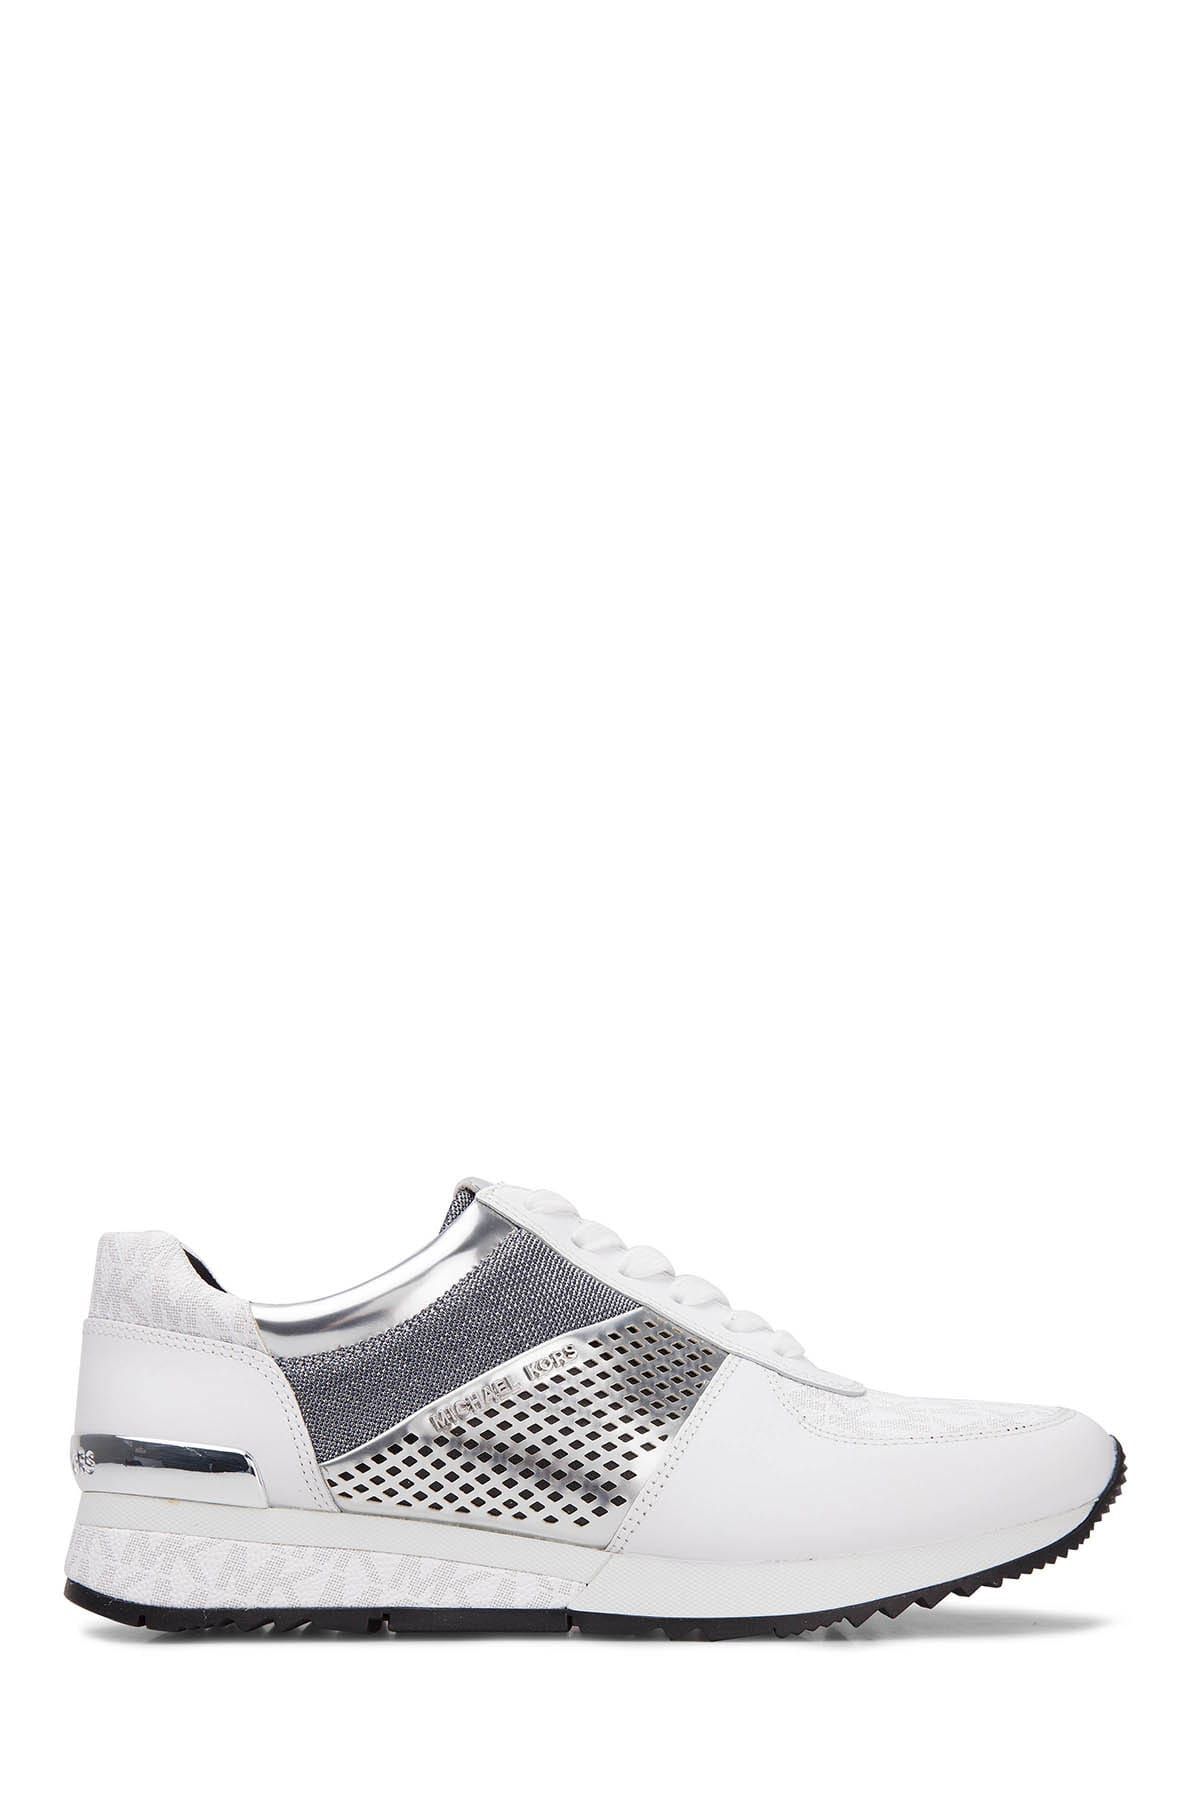 Michael Kors Kadın Beyaz-Gümüş Sneaker